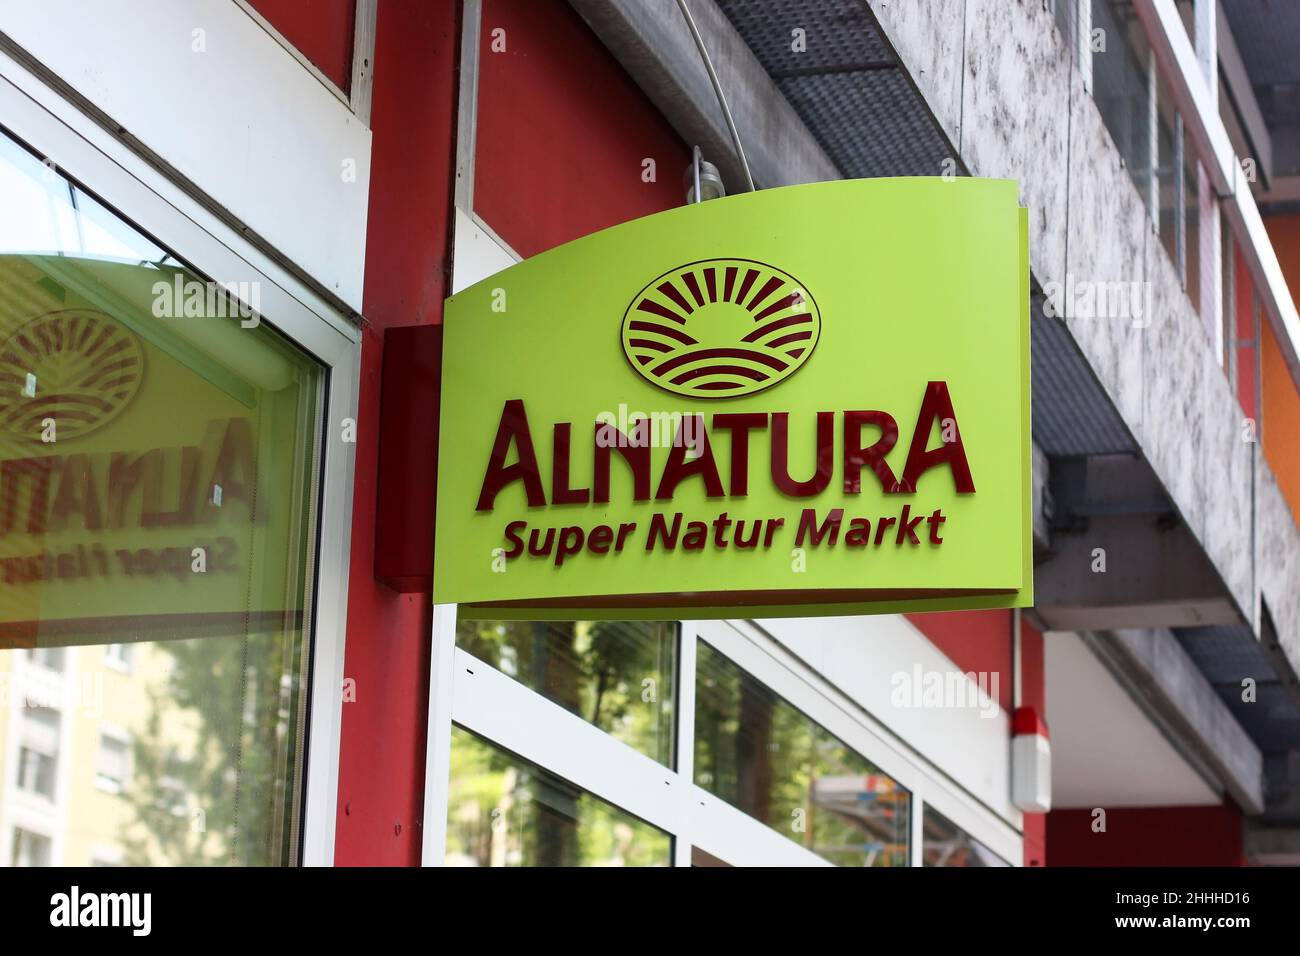 Munich, Allemagne - 07 juillet 2018 : panneau lumineux Alnaturaa d'un supermarché à Munich.Marque commerciale Alnaturaa - la gamme de la marque inclut l'environnement Banque D'Images